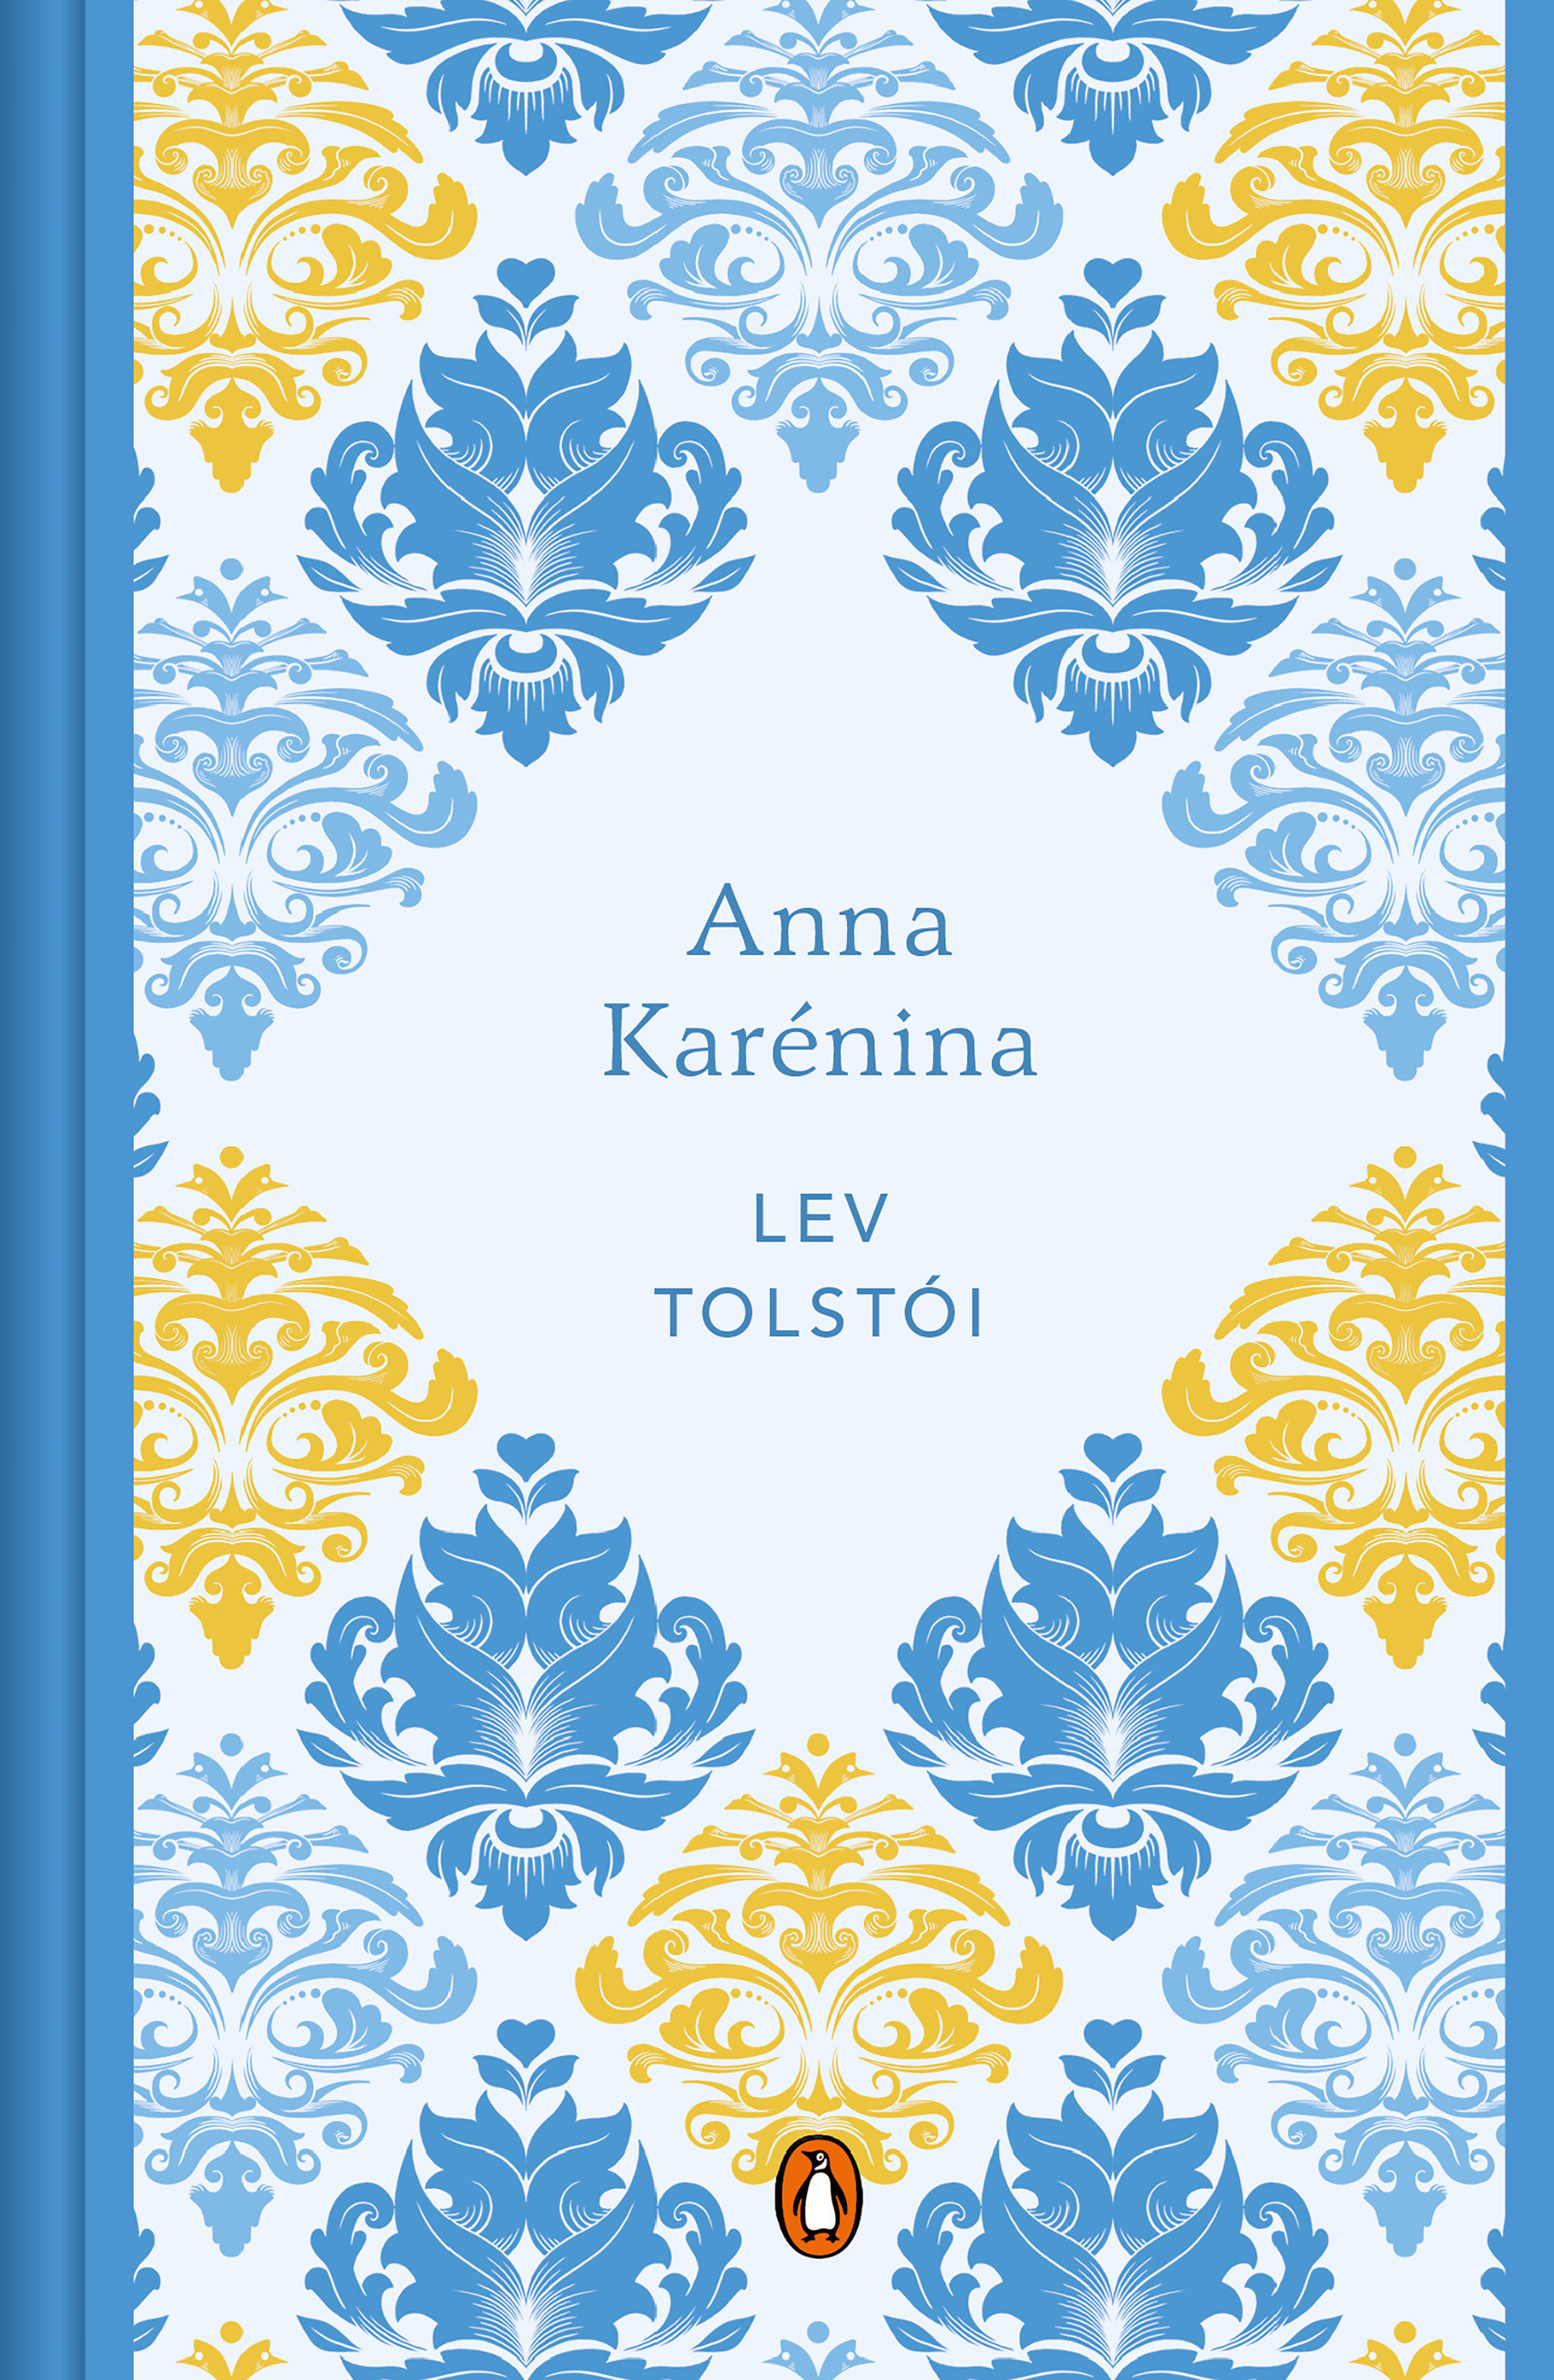 Anna Karénina (Edición Conmemorativa) / Anna Karenina (Spanish Commemorative Edi Tion) (Hardcover Book)